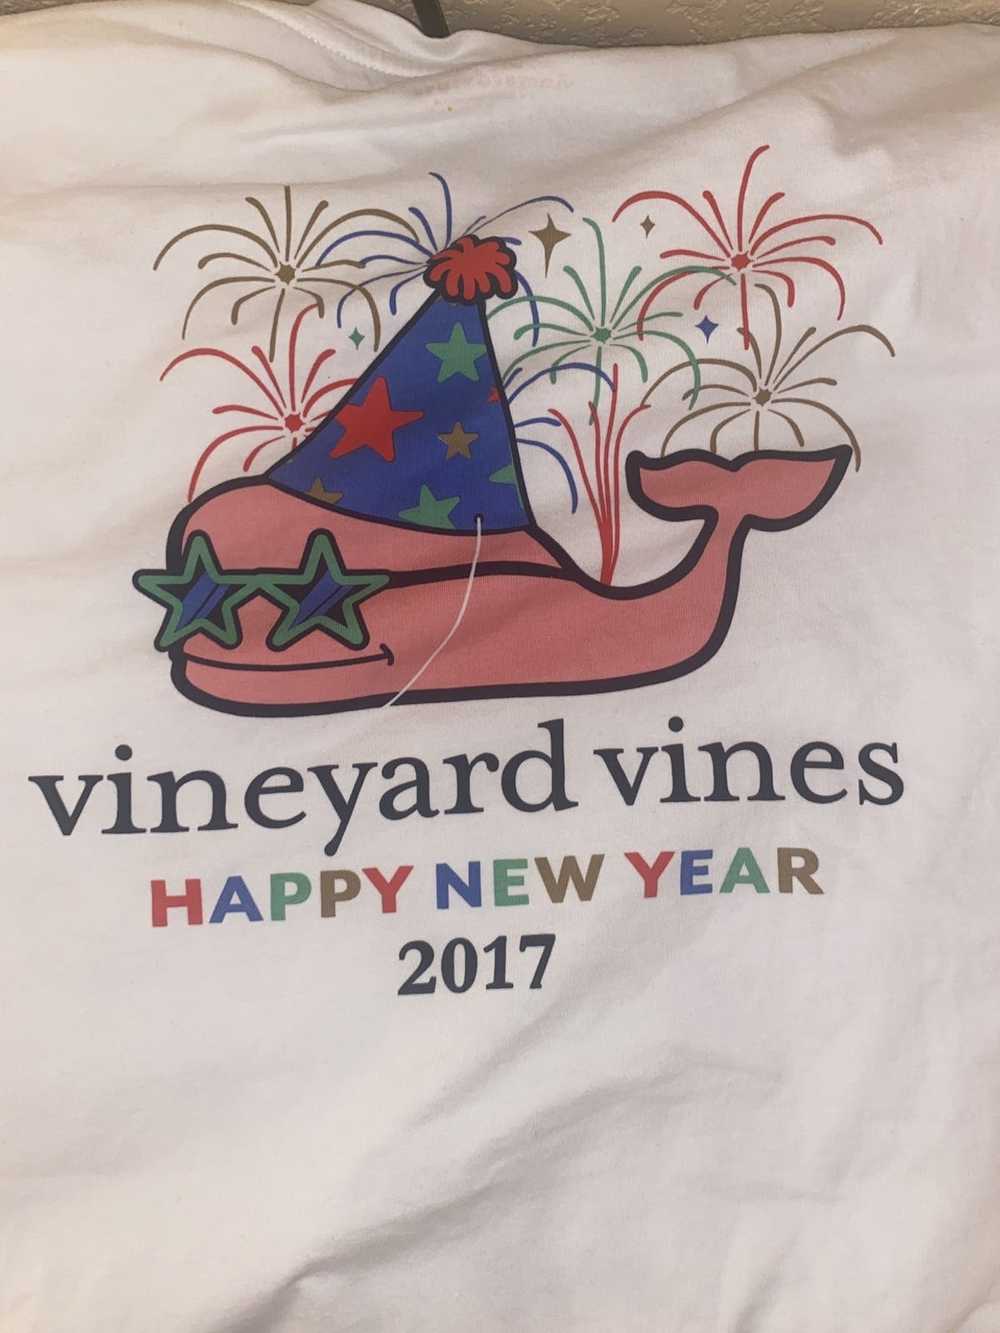 Vineyard Vines Vineyard vines - image 2